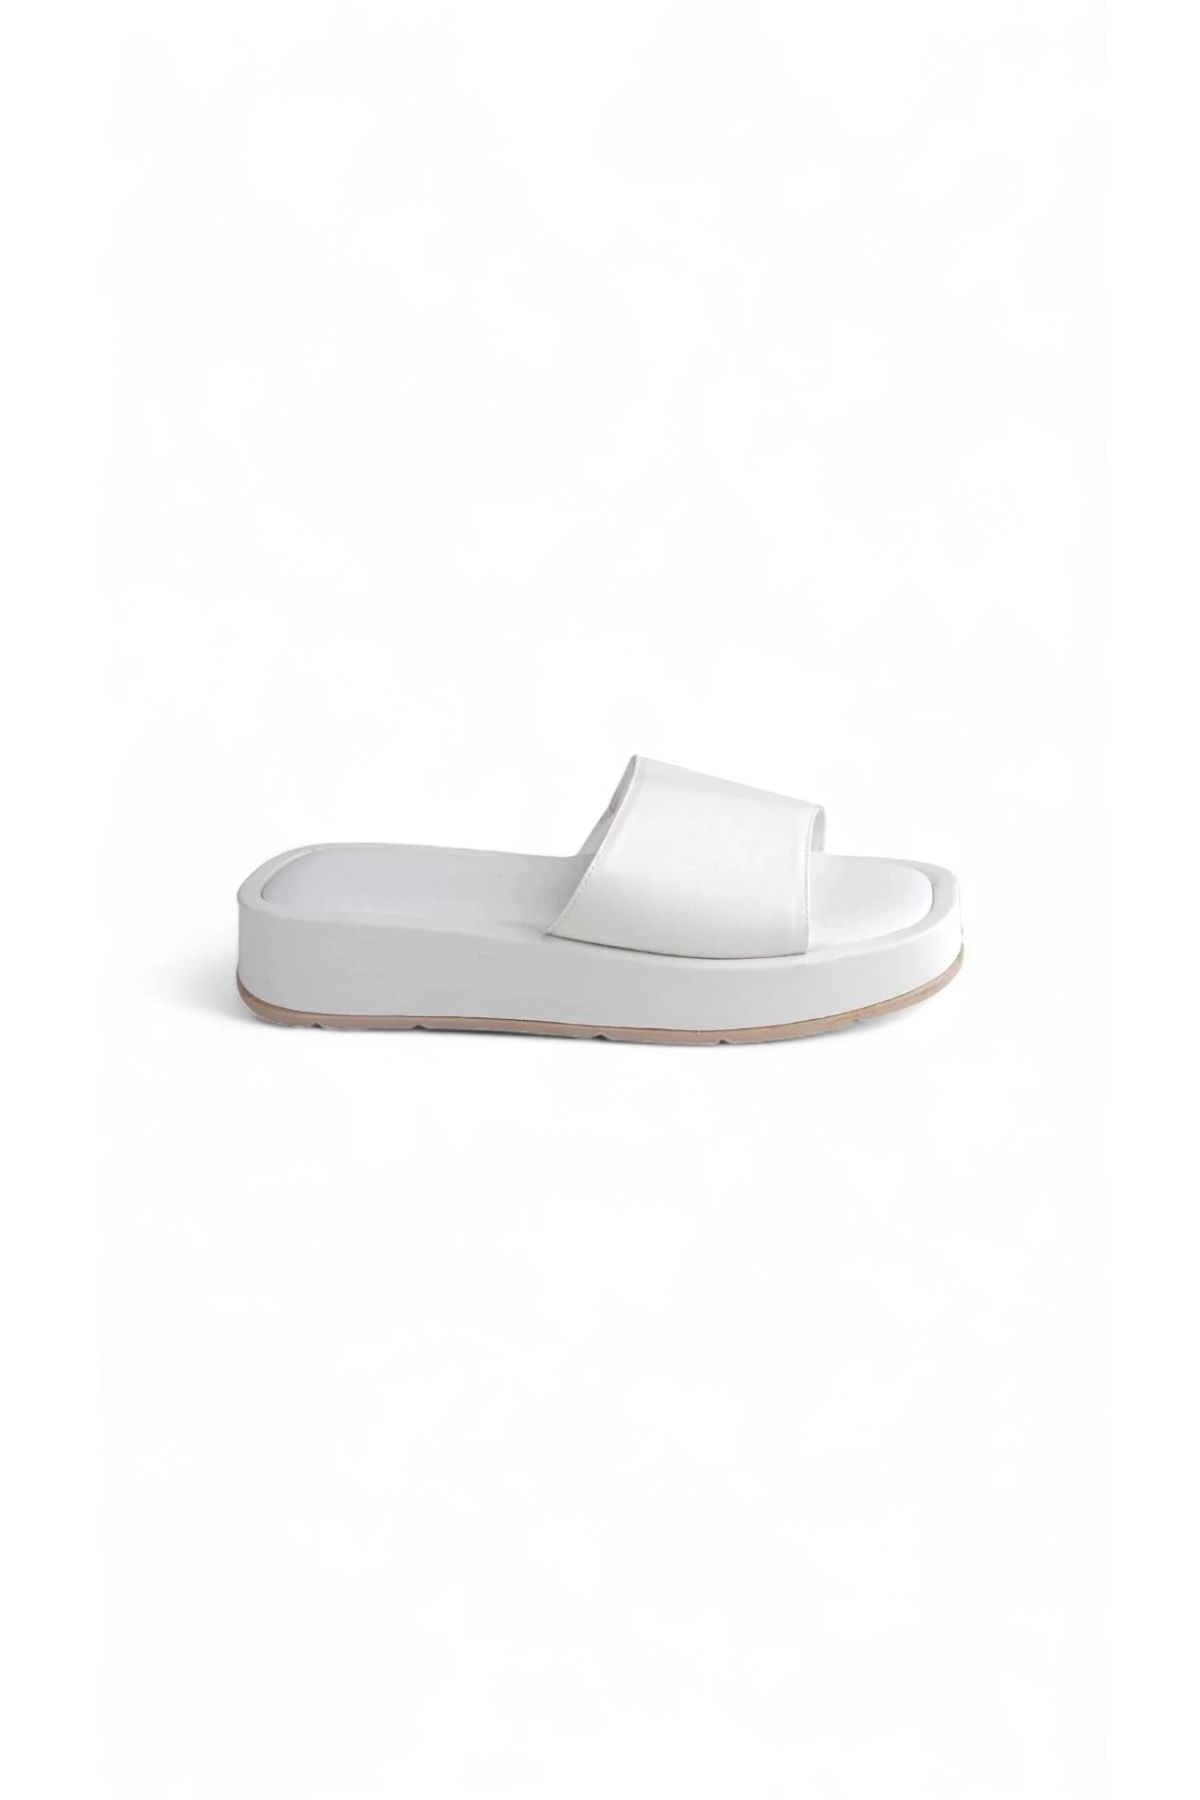 Melen Shoes Daisy Beyaz Yüksek Taban Kadın Yazlık Günlük Terlik